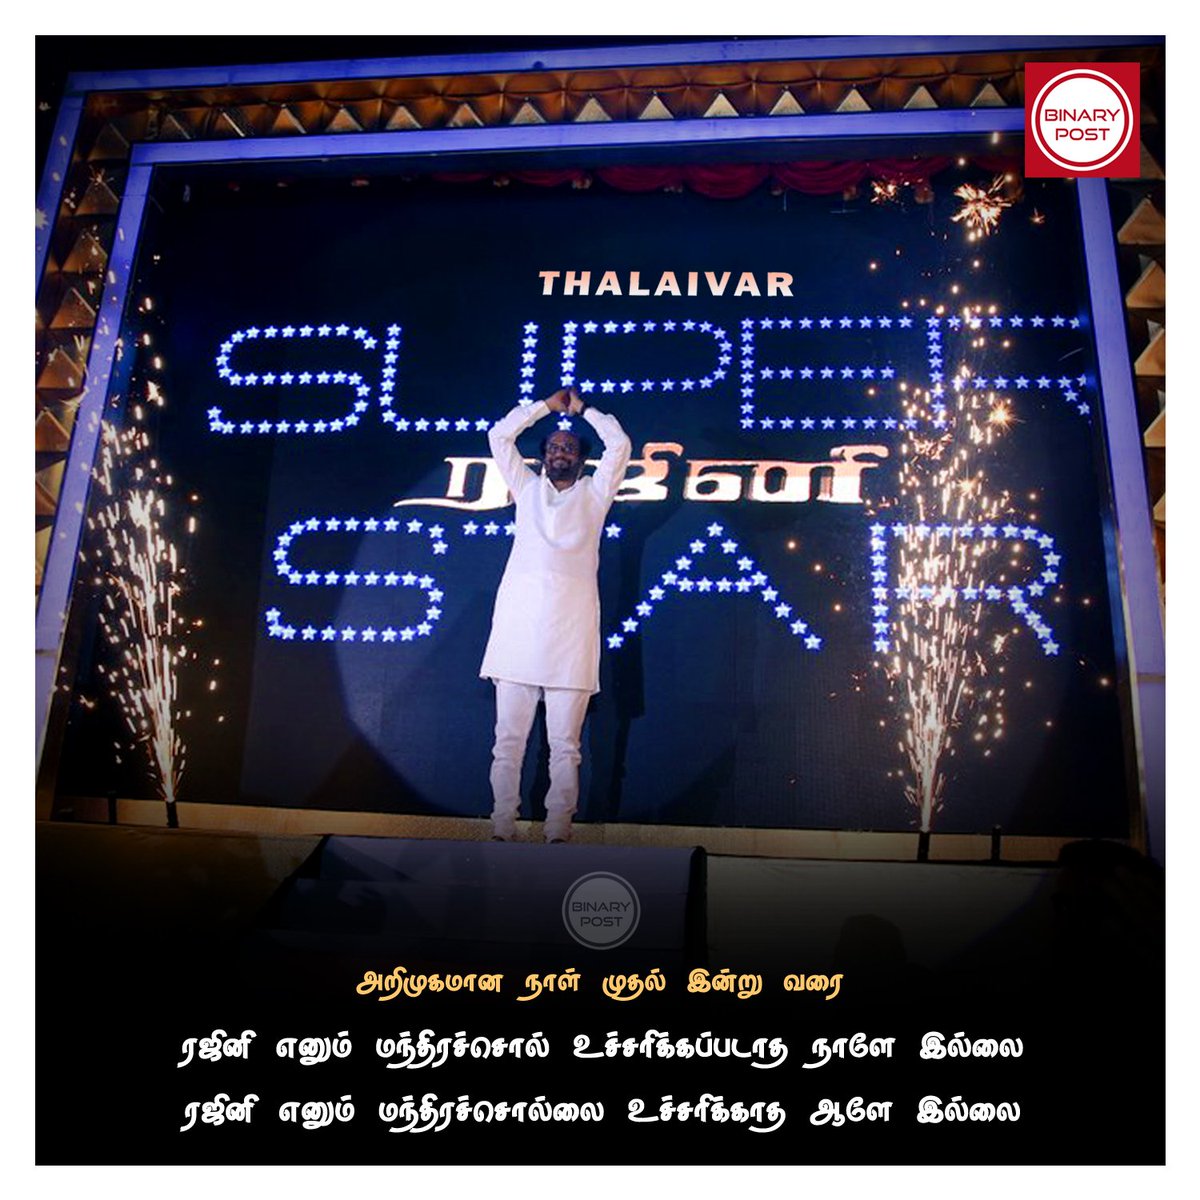 ரஜினி எனும் மந்திரச்சொல்...

#Thalaivar 🤘 #Superstar #Rajinikanth @rajinikanth #BinaryPost